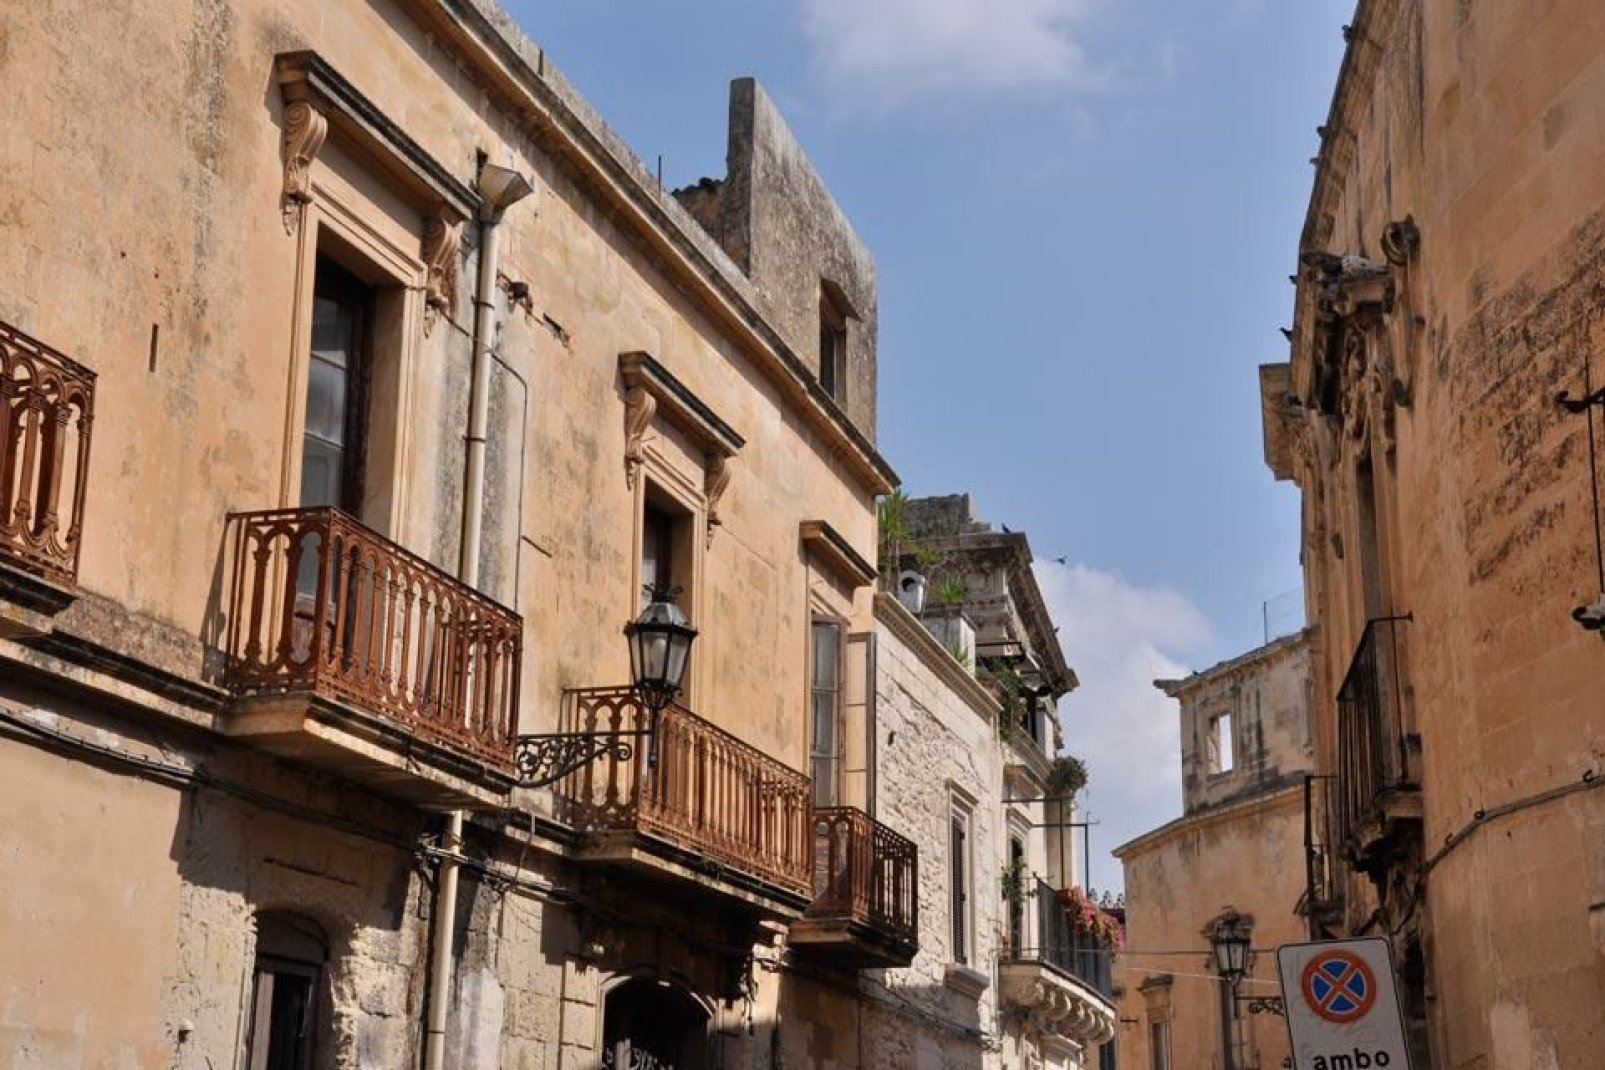 La plupart des bâtiments de la ville ont été construits avec la pierre dite de Lecce, très tendre et aux couleurs chaudes.